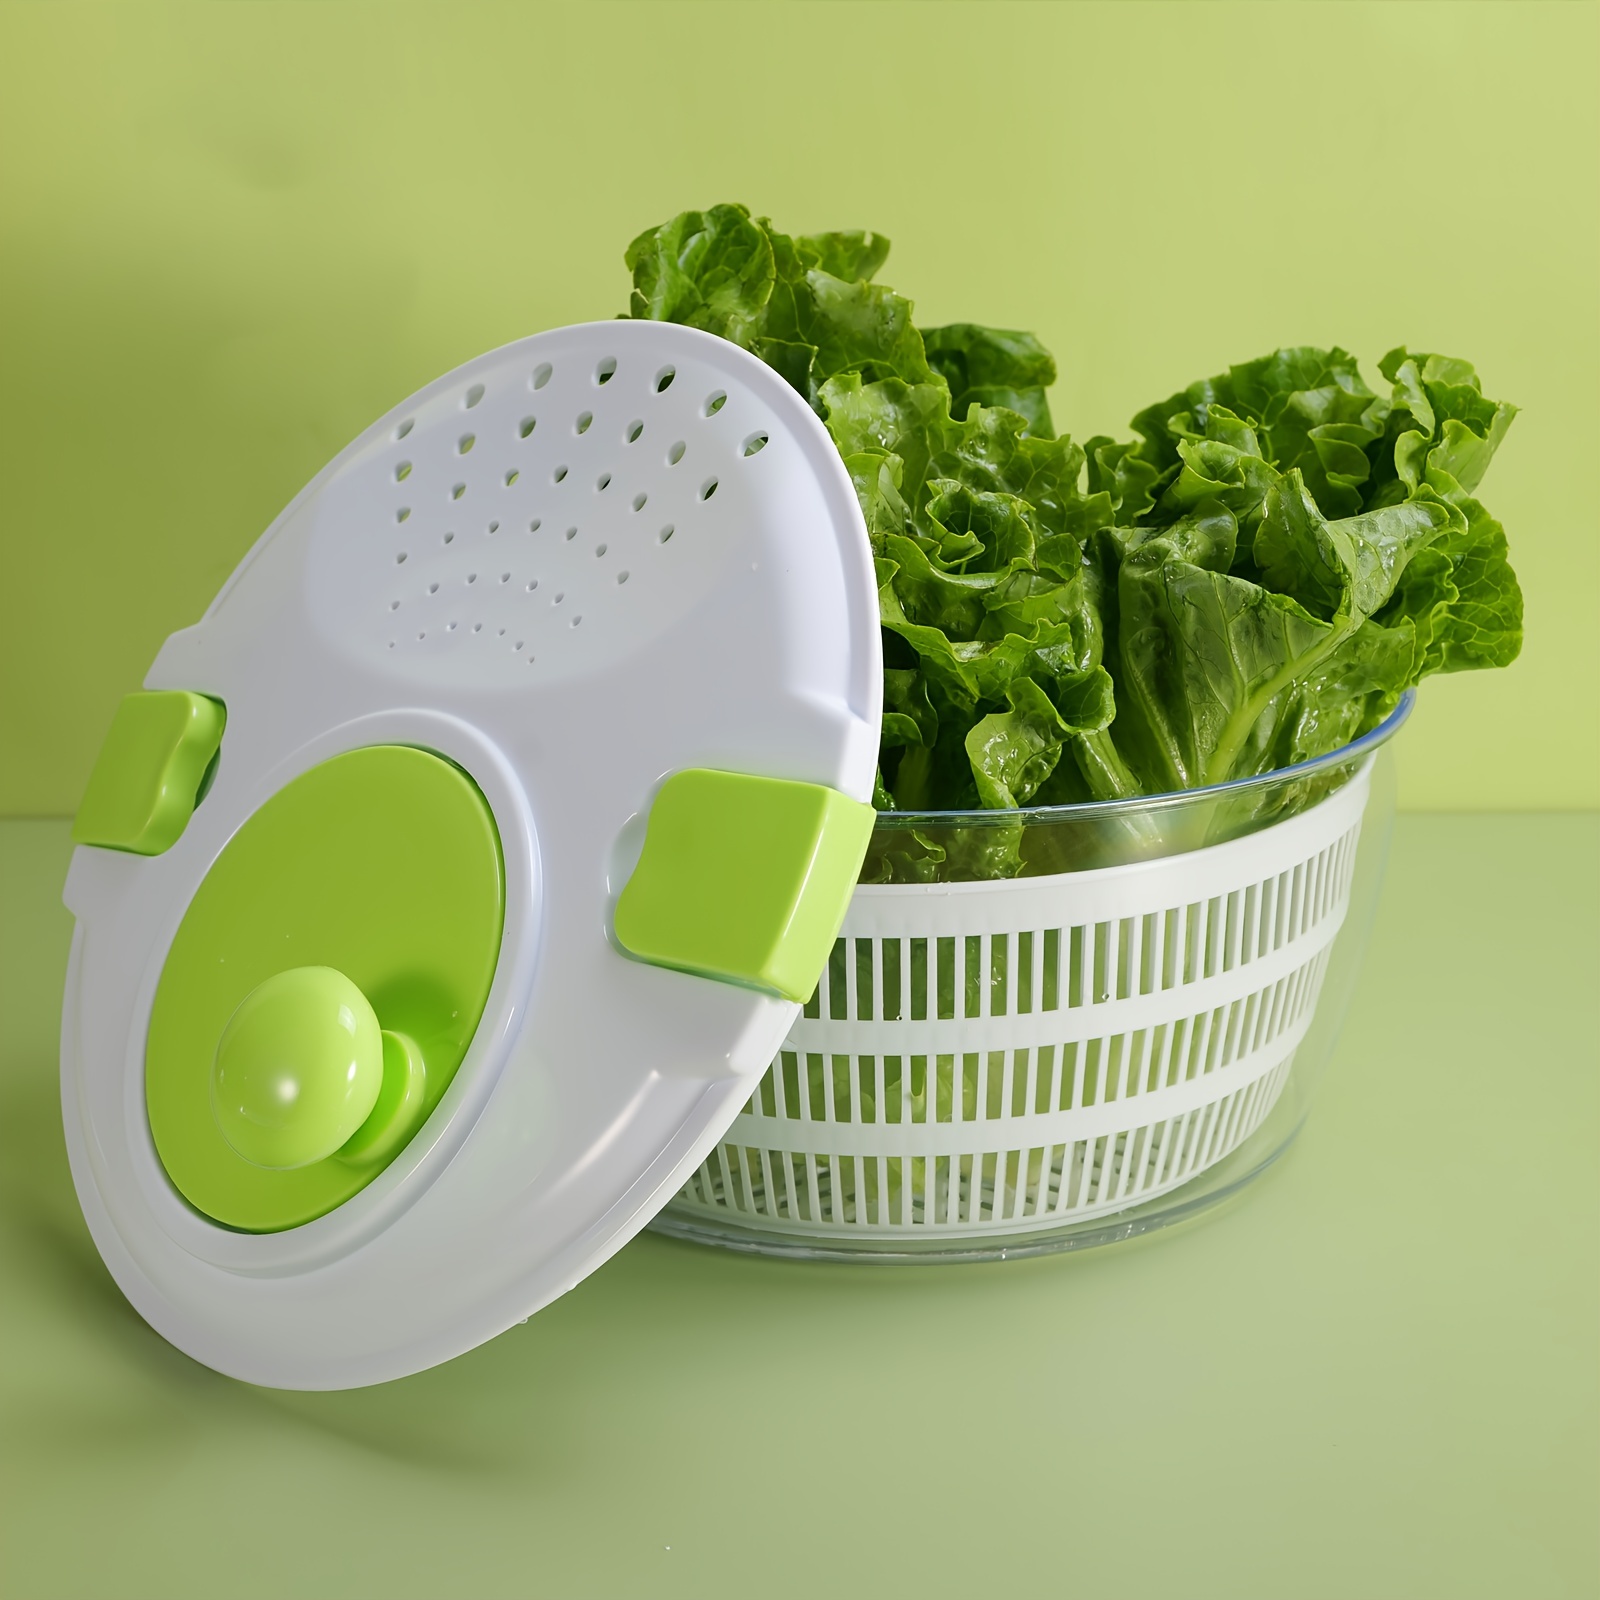 Spin Dryer For Leafy Vegetables